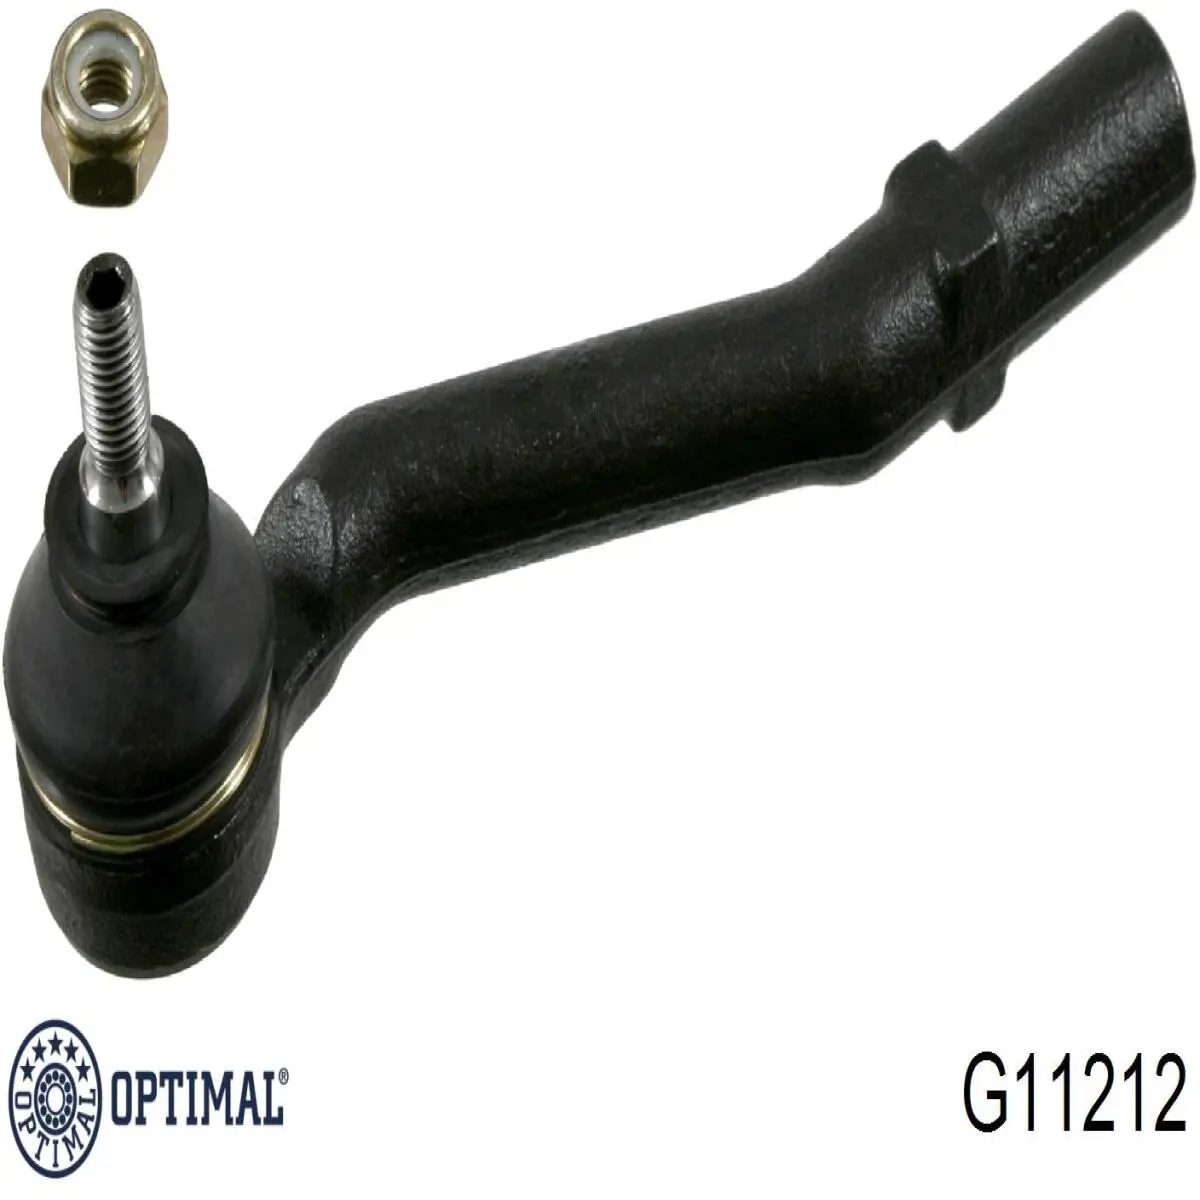 G11212 Optimal rótula barra de acoplamiento exterior